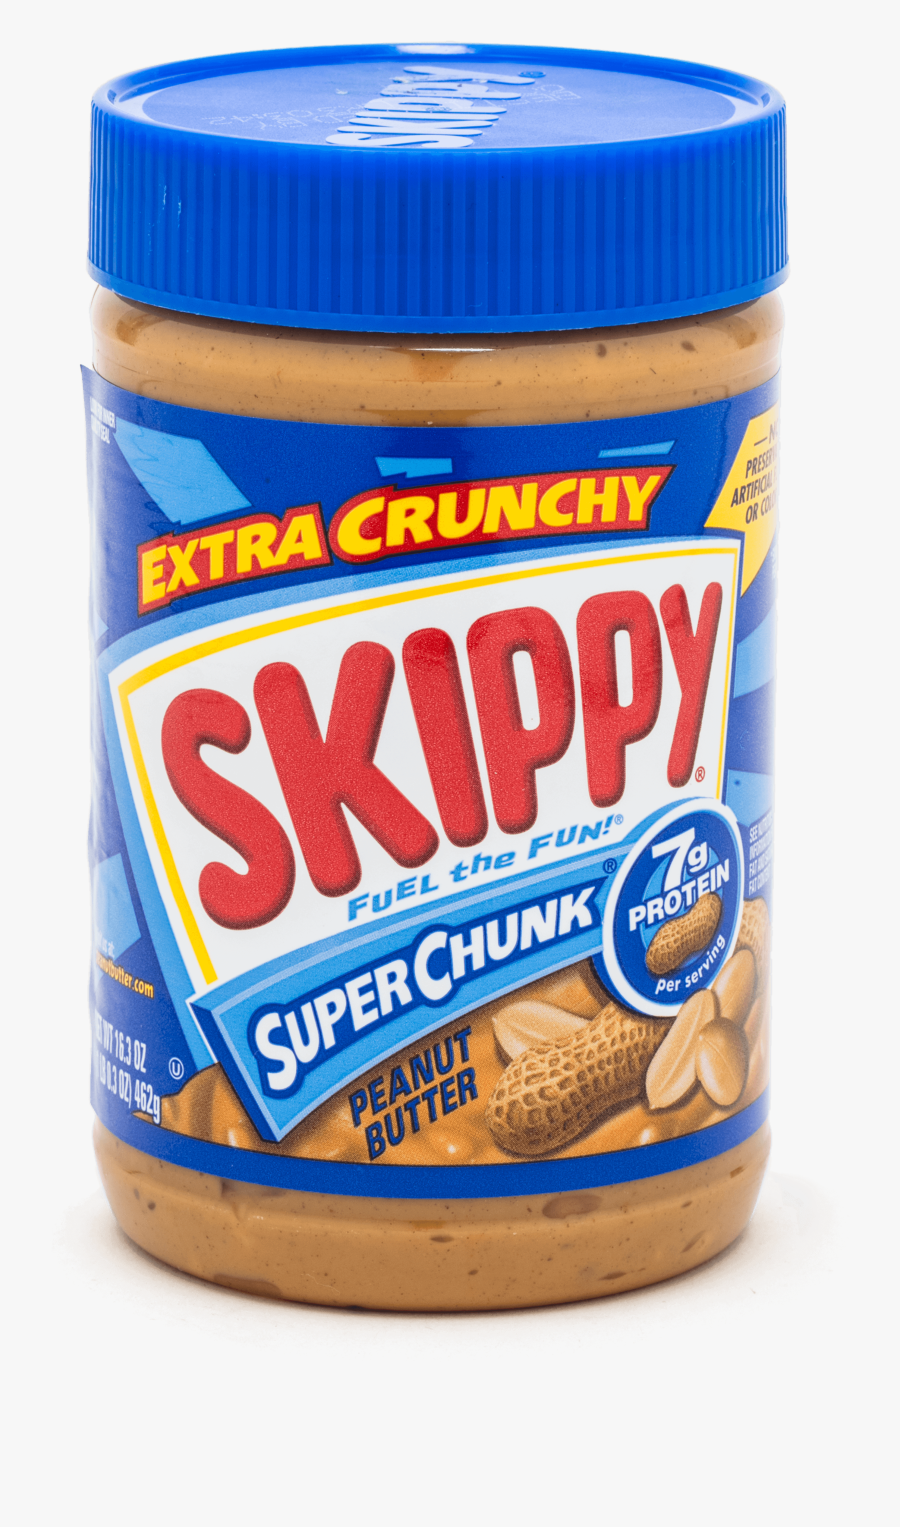 Crunchy Peanut Butter Brands, Transparent Clipart